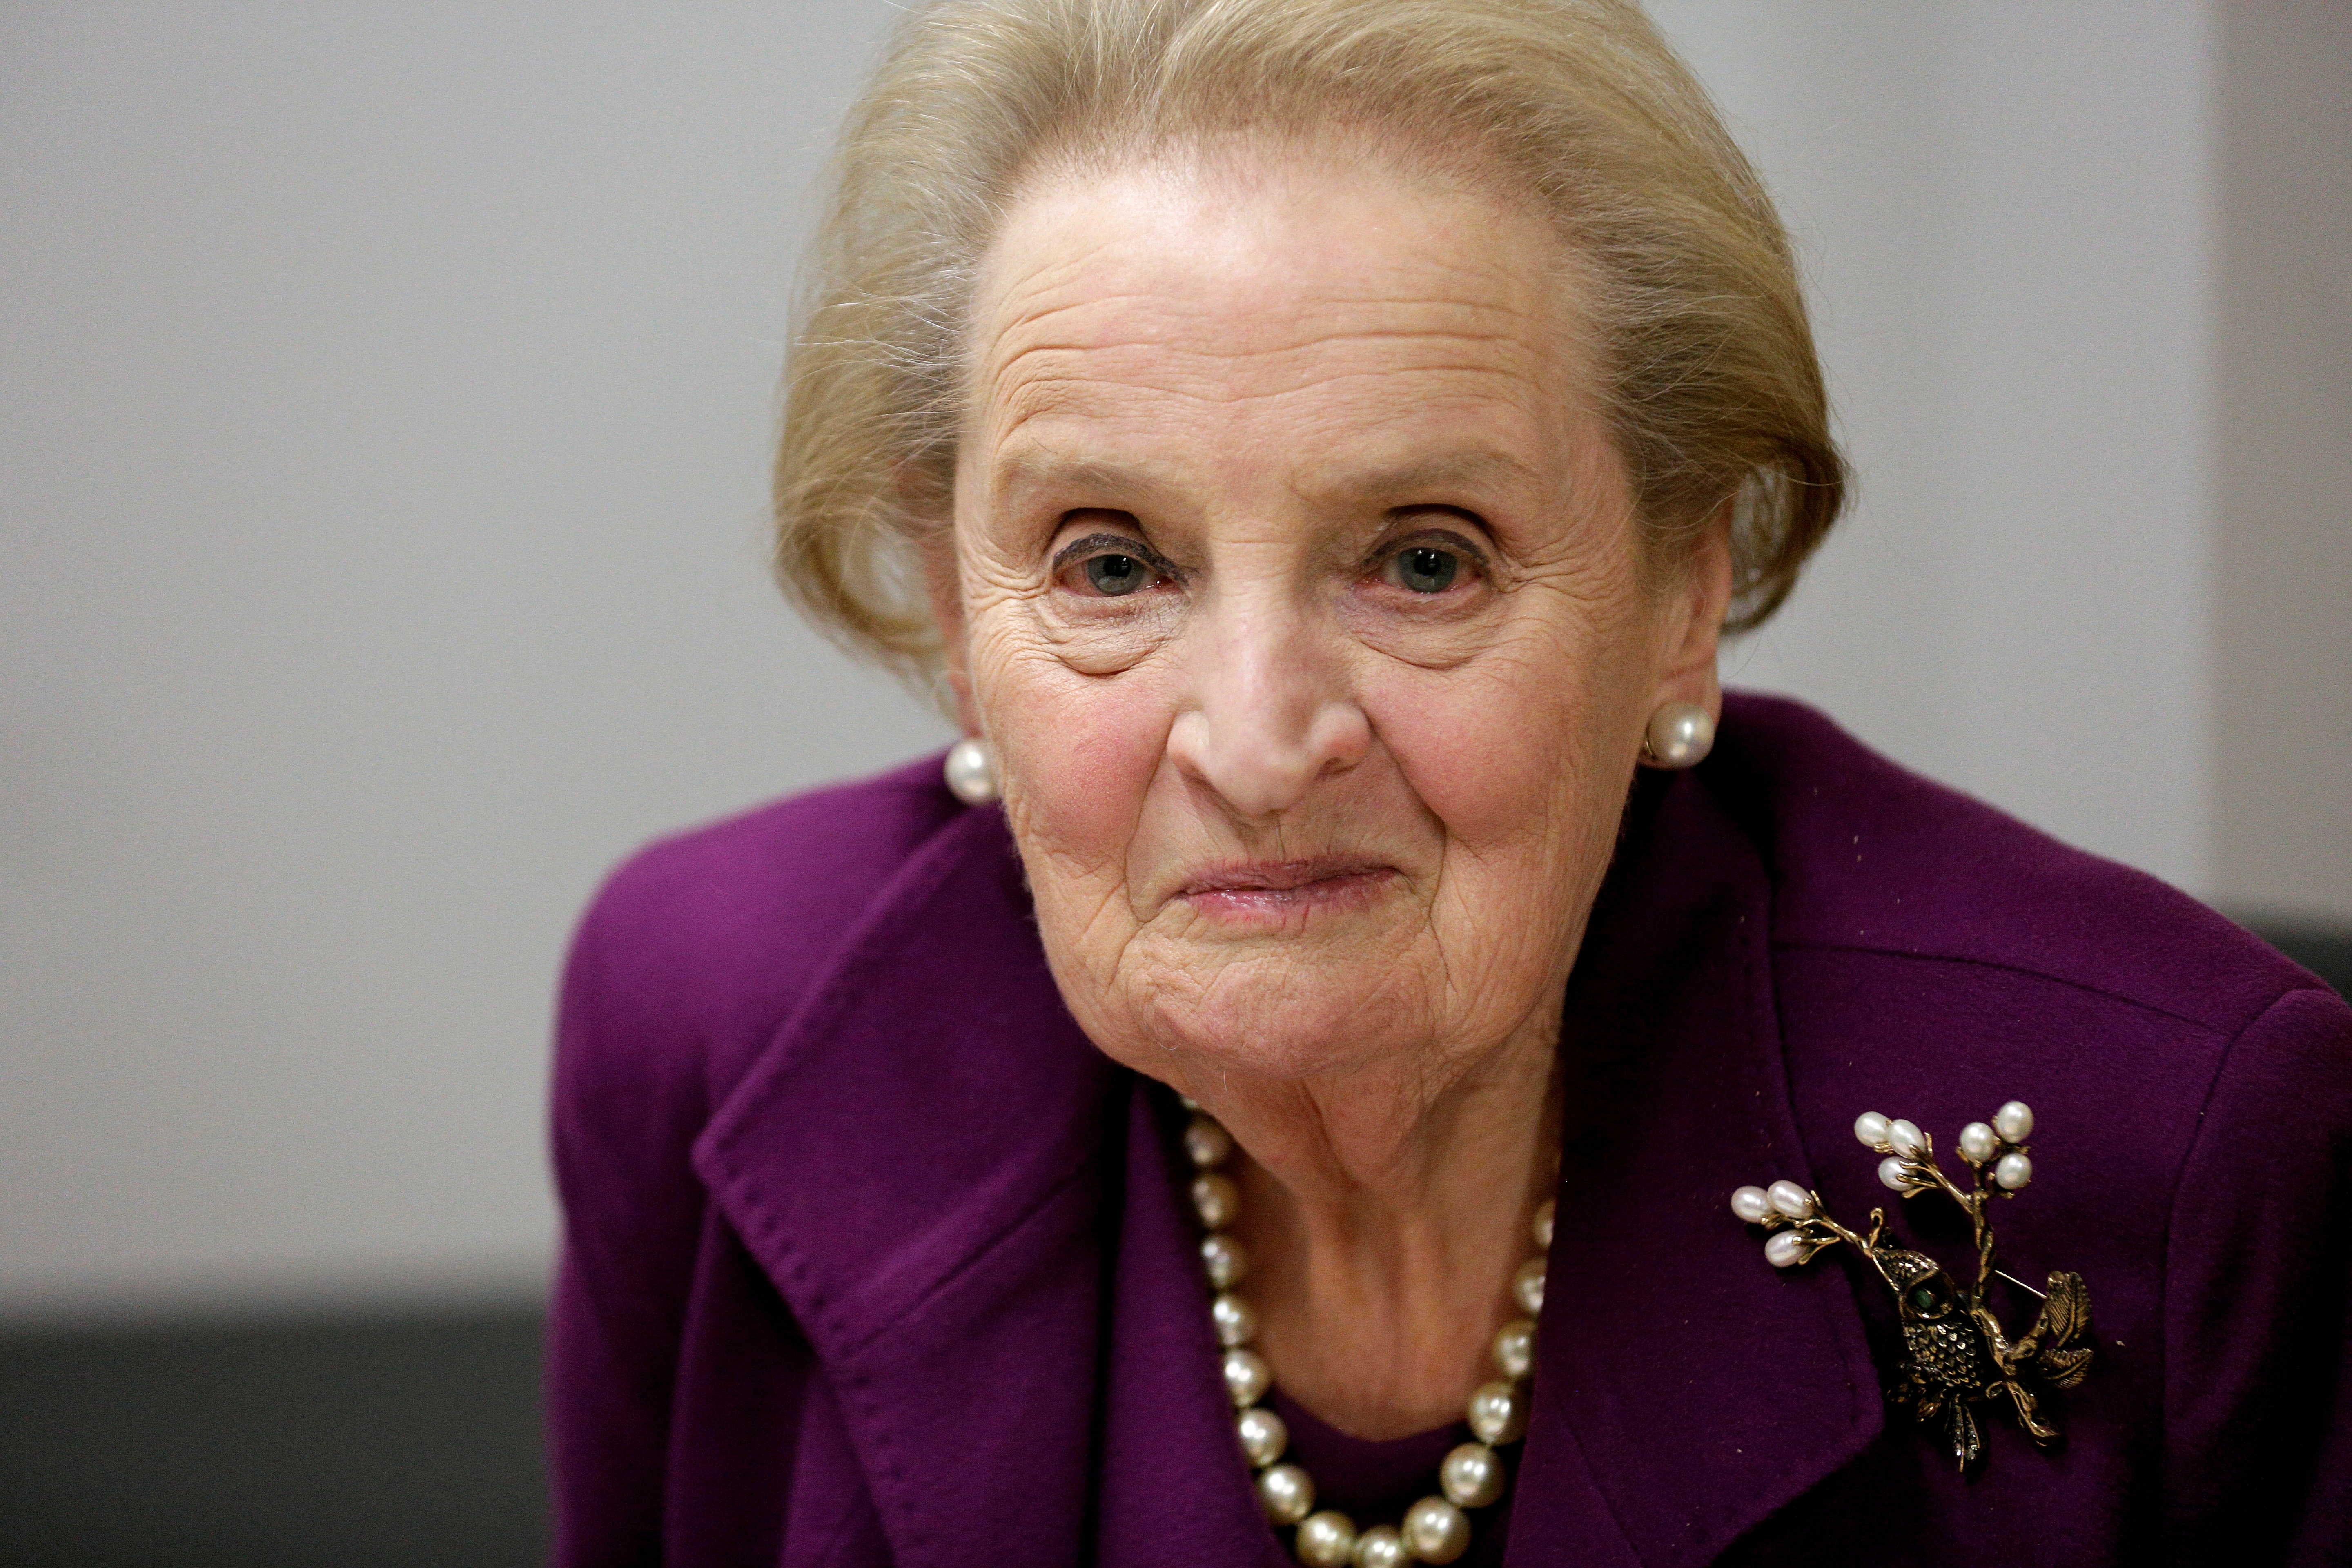 Madeleine Albright, 23 de marzo de 2022, 84 años. Conocida como la Dama de Hierro de los Estados Unidos, fue la primera mujer en convertirse en Secretaria de Estado del país norteamericano cuando Bill Clinton fue presidente (REUTERS/Joshua Roberts/File Photo)